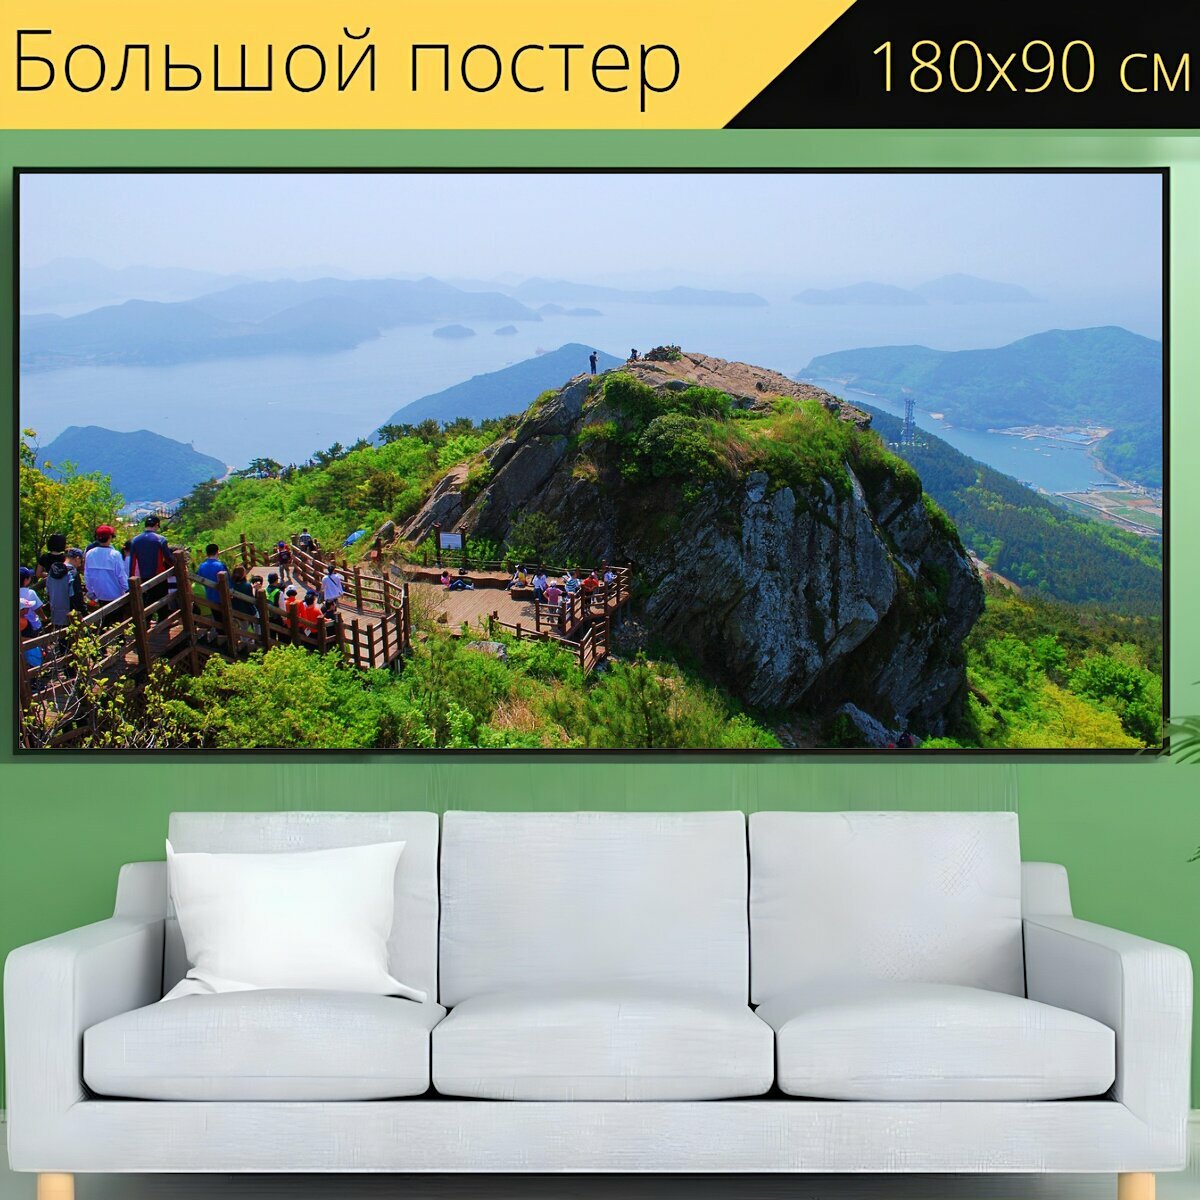 Большой постер "Гора, альпинизм, пейзаж" 180 x 90 см. для интерьера